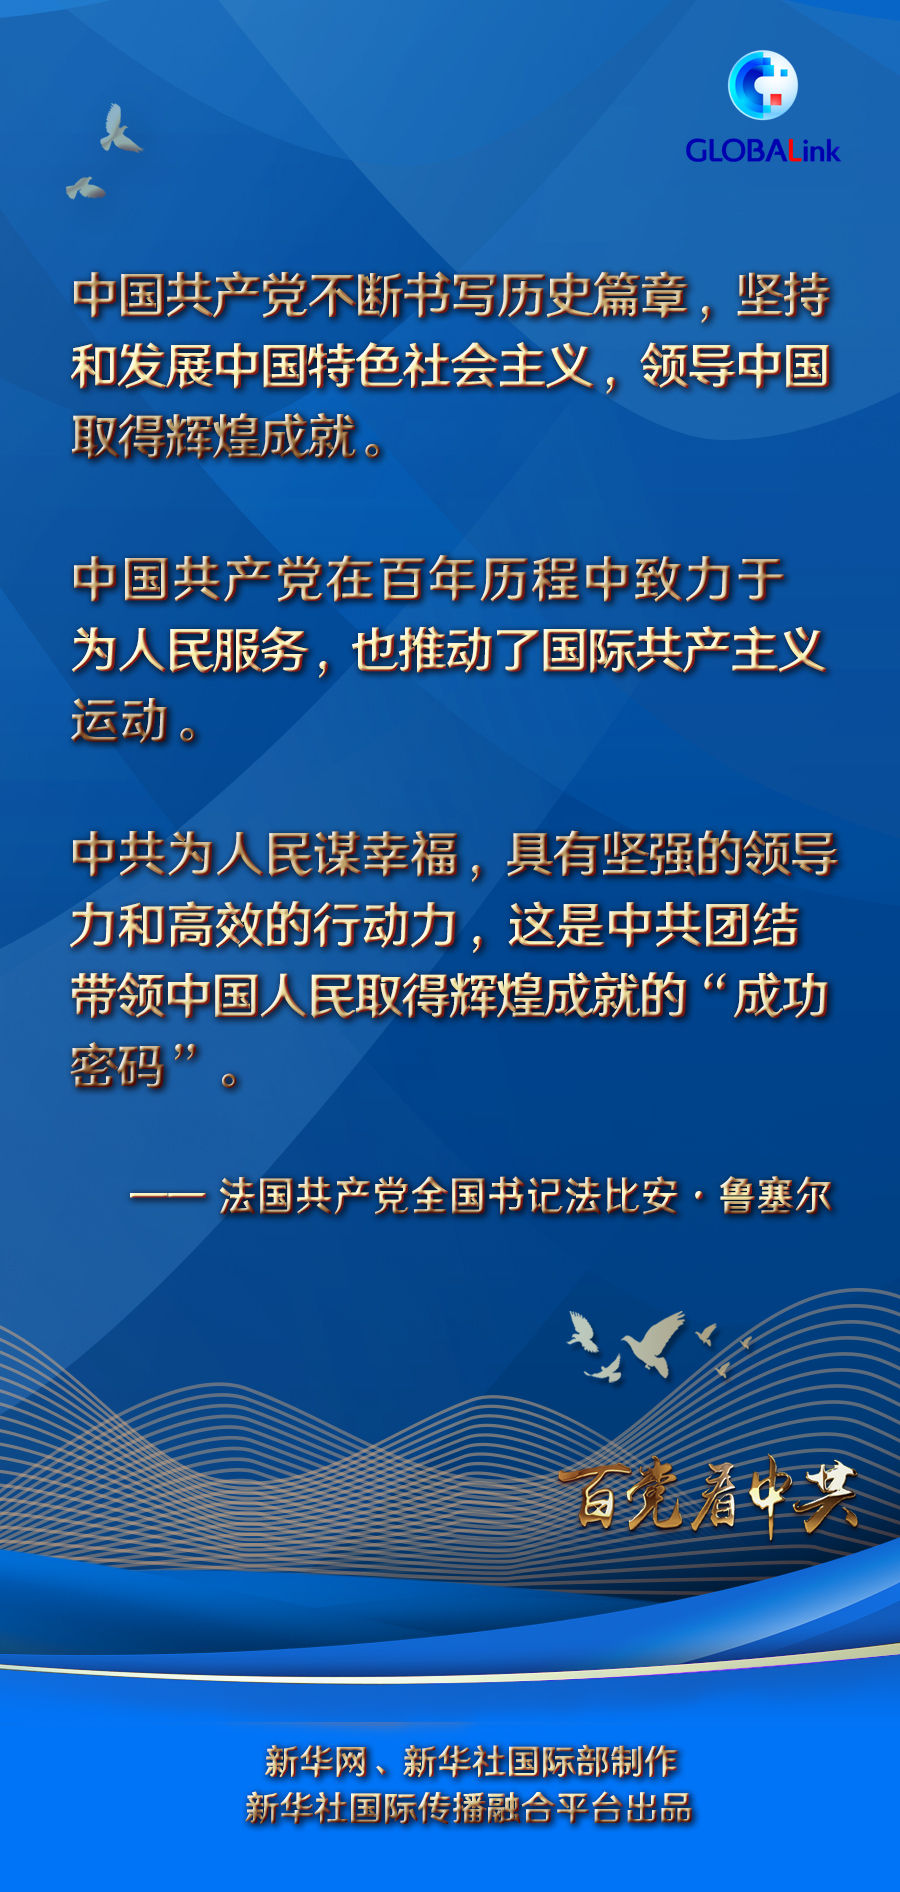 鲁塞尔对中国共产党建党百年表示祝贺